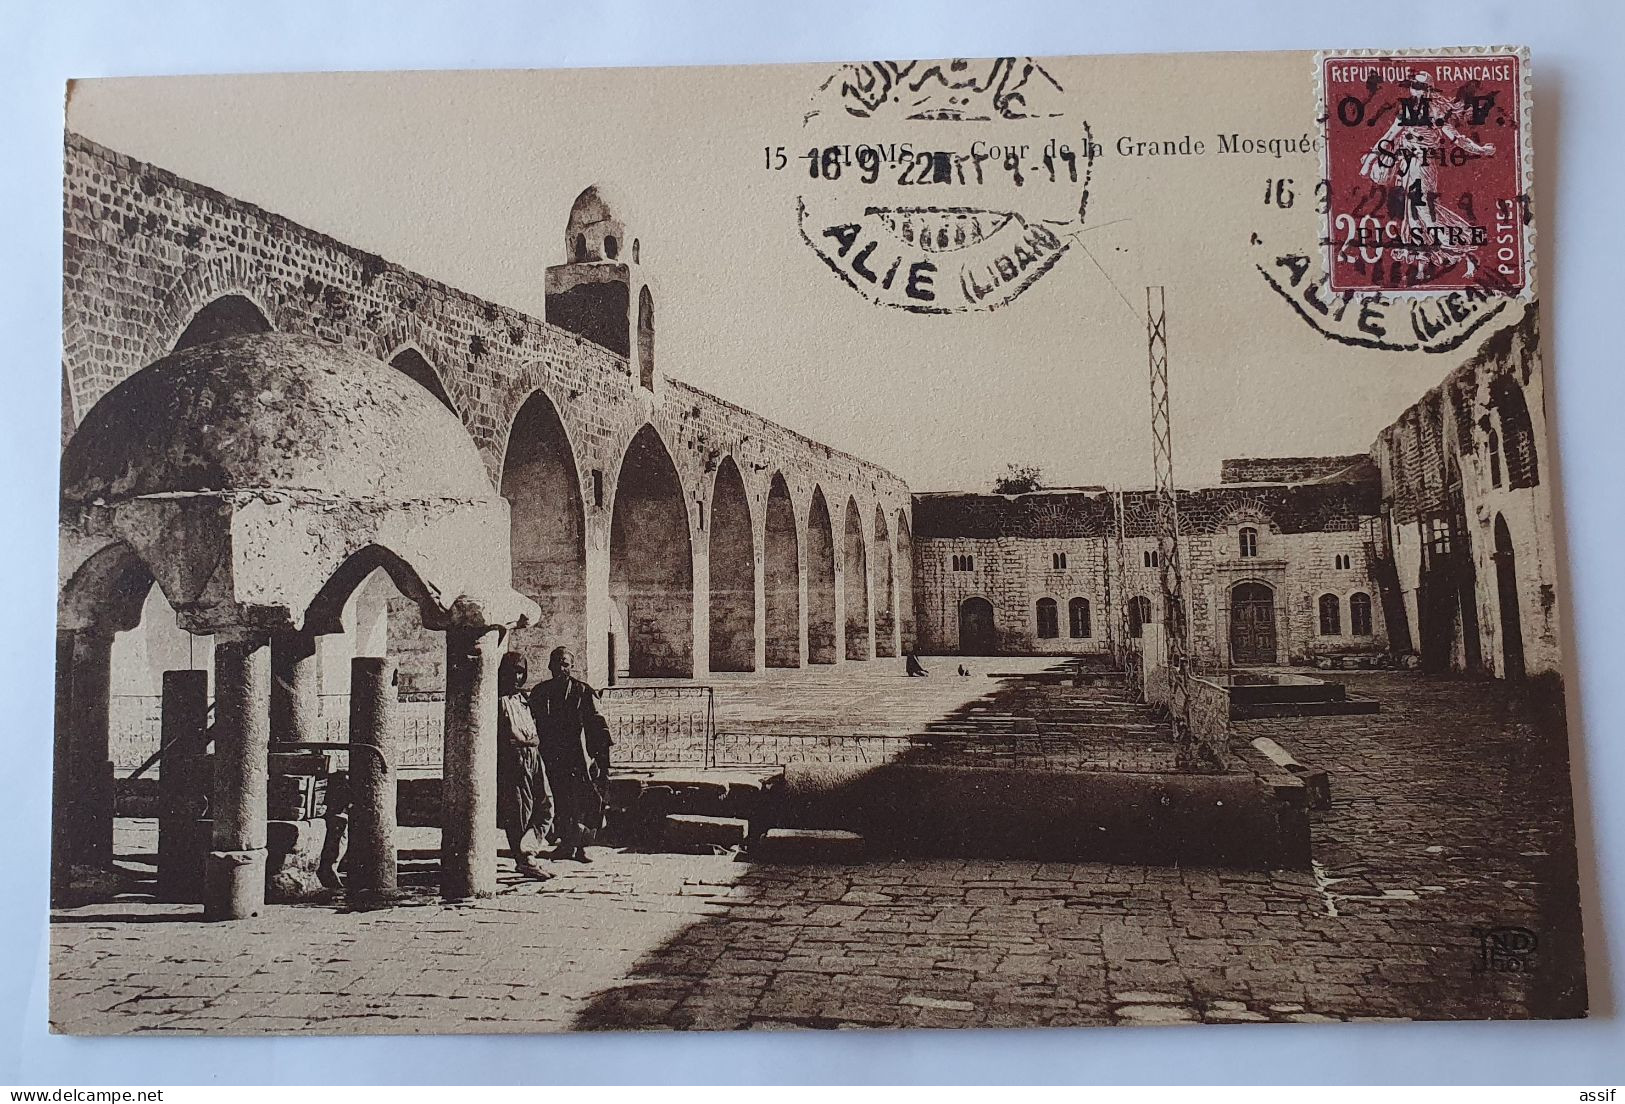 16 cpa cachet Alié Liban 16/09/1922 Syrie timbre semeuse